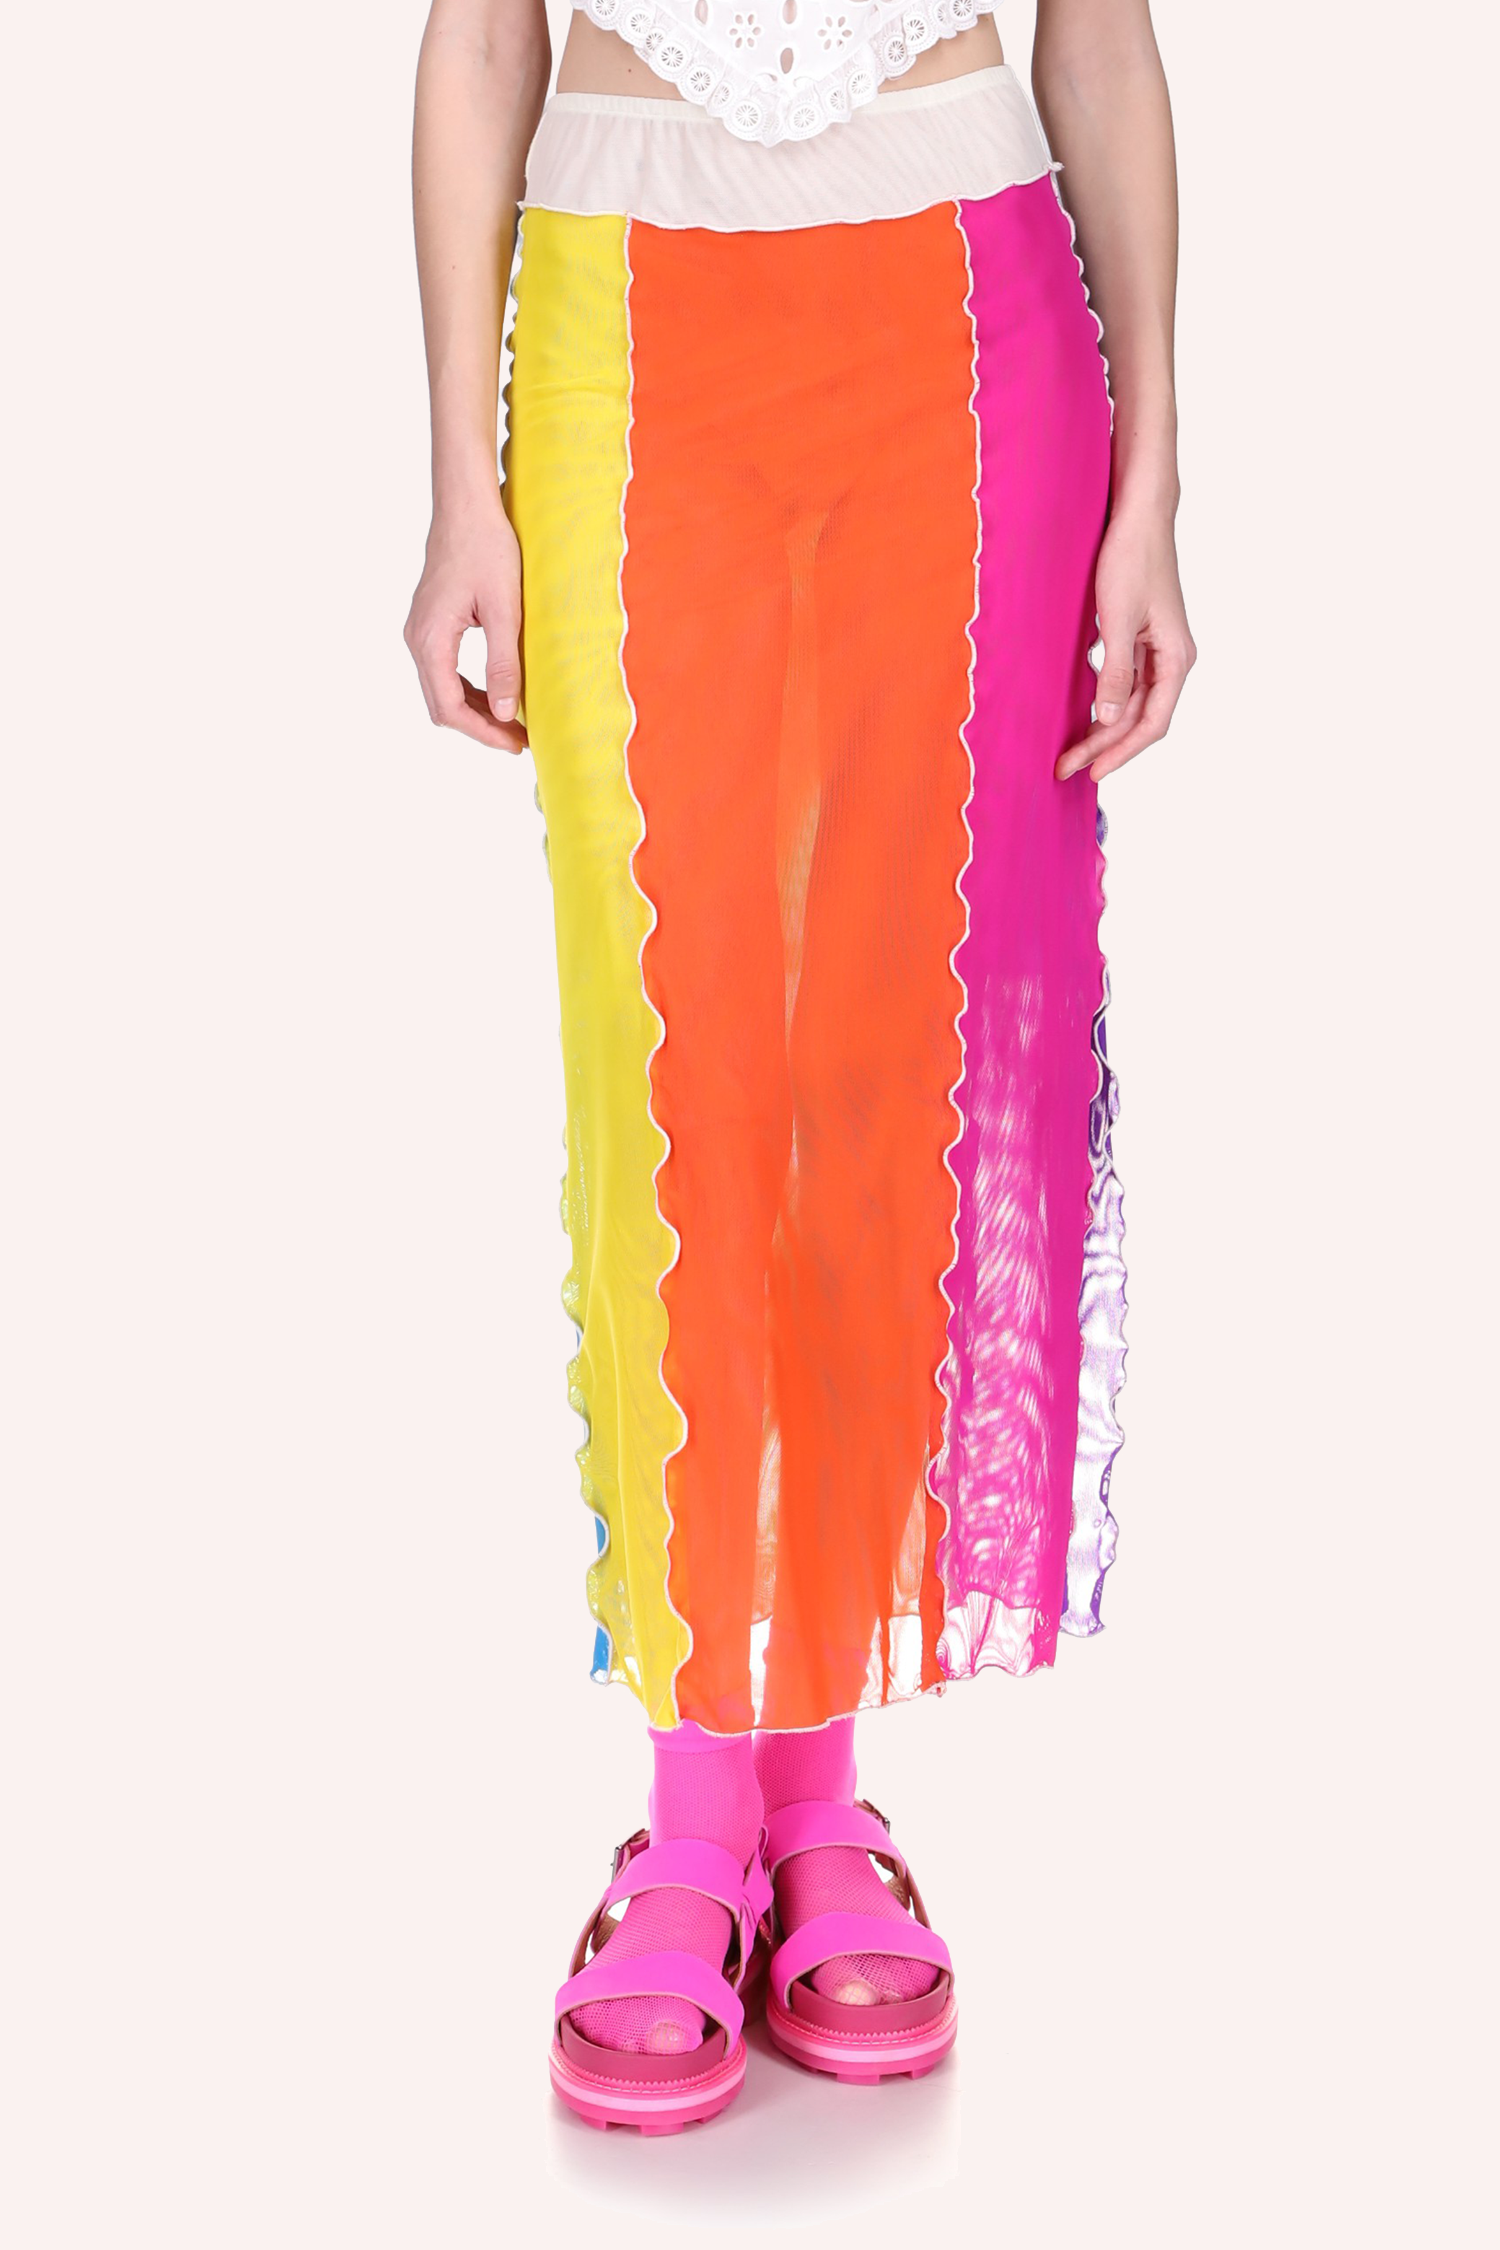 Mesh Rainbow Skirt, ankles long, see-thru, yellow, orange & pink, slit on the left, white belt line